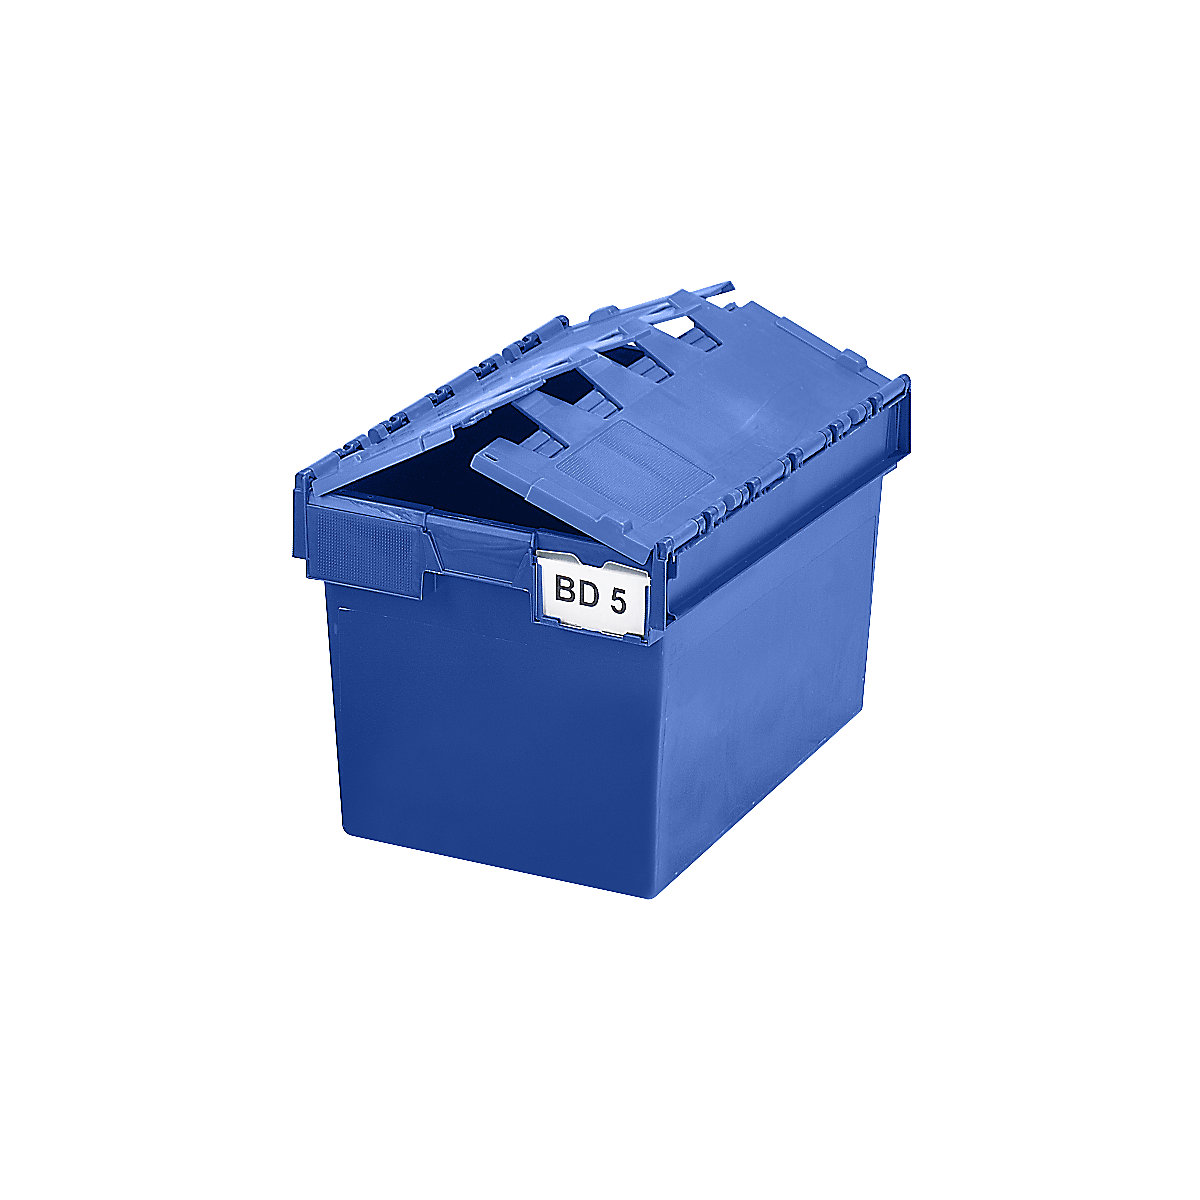 Mehrweg-Stapelbehälter KAIMAN, Inhalt 64 Liter, LxBxH 600 x 400 x 365 mm, blau, ab 10 Stück